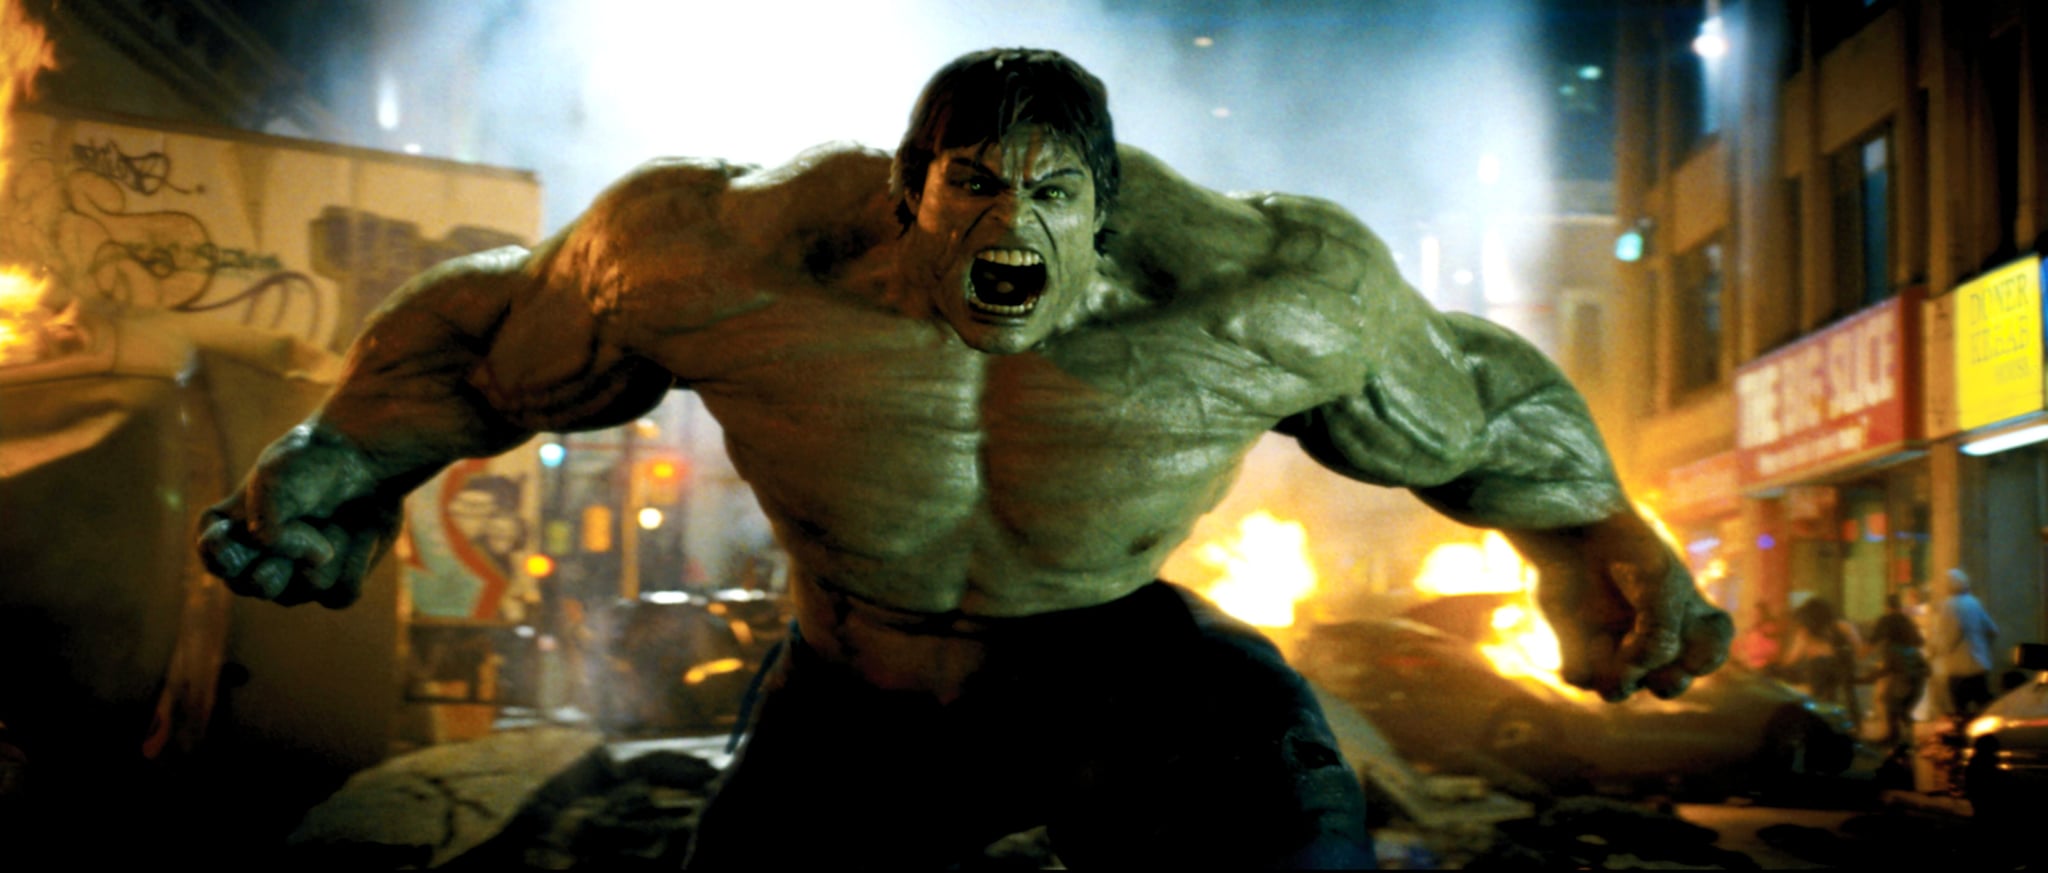 Marvel Avengers Endgame Hulk Action Pose shirt